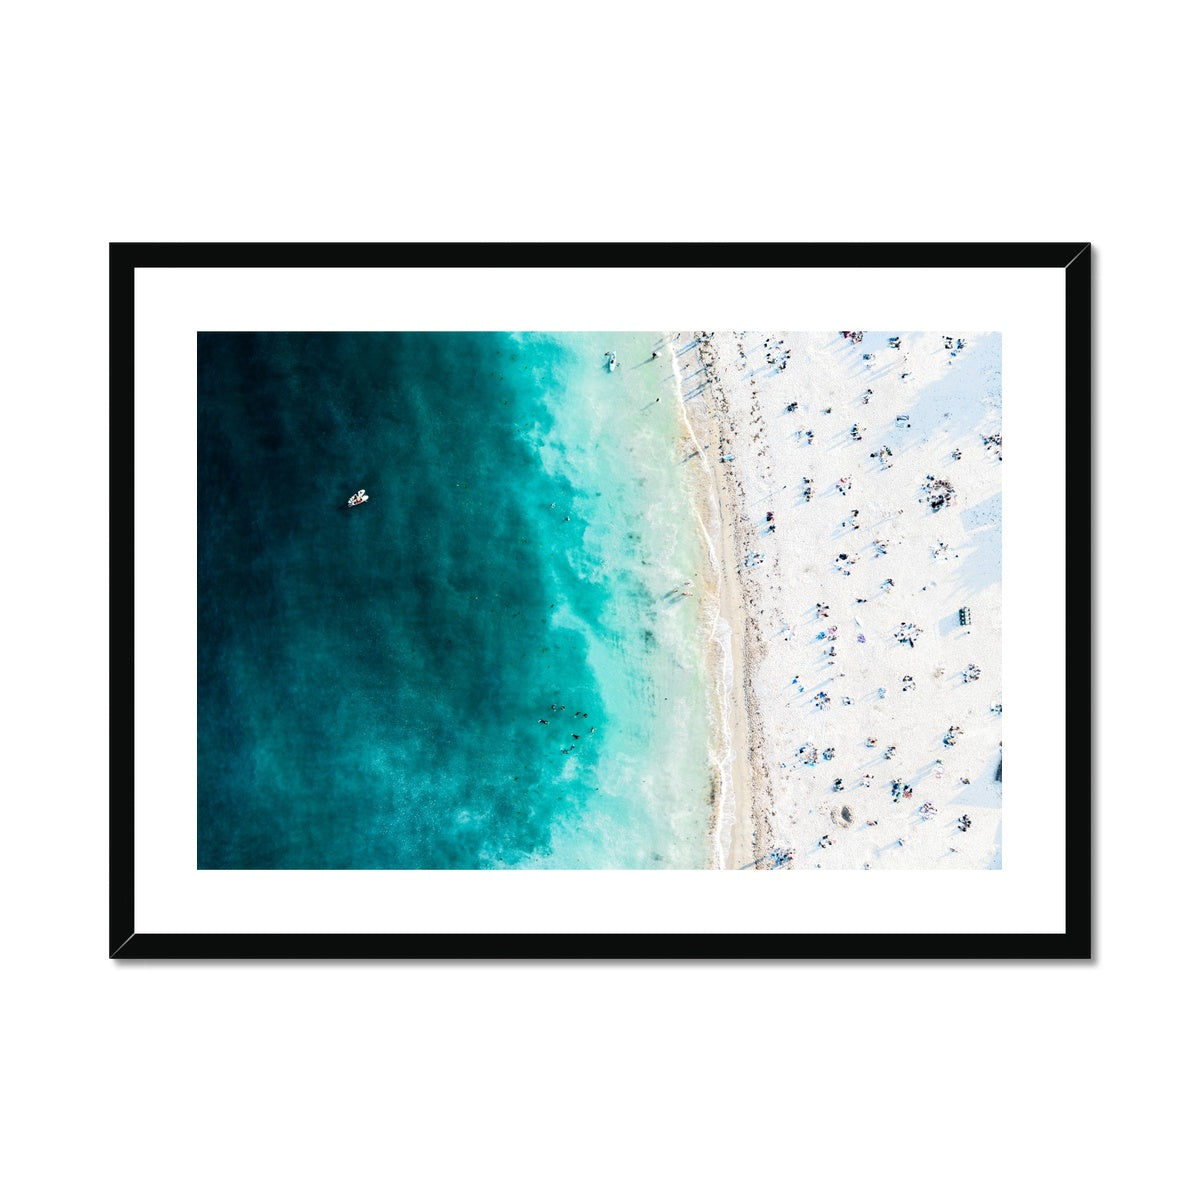 gyllyngvase beach from above framed print